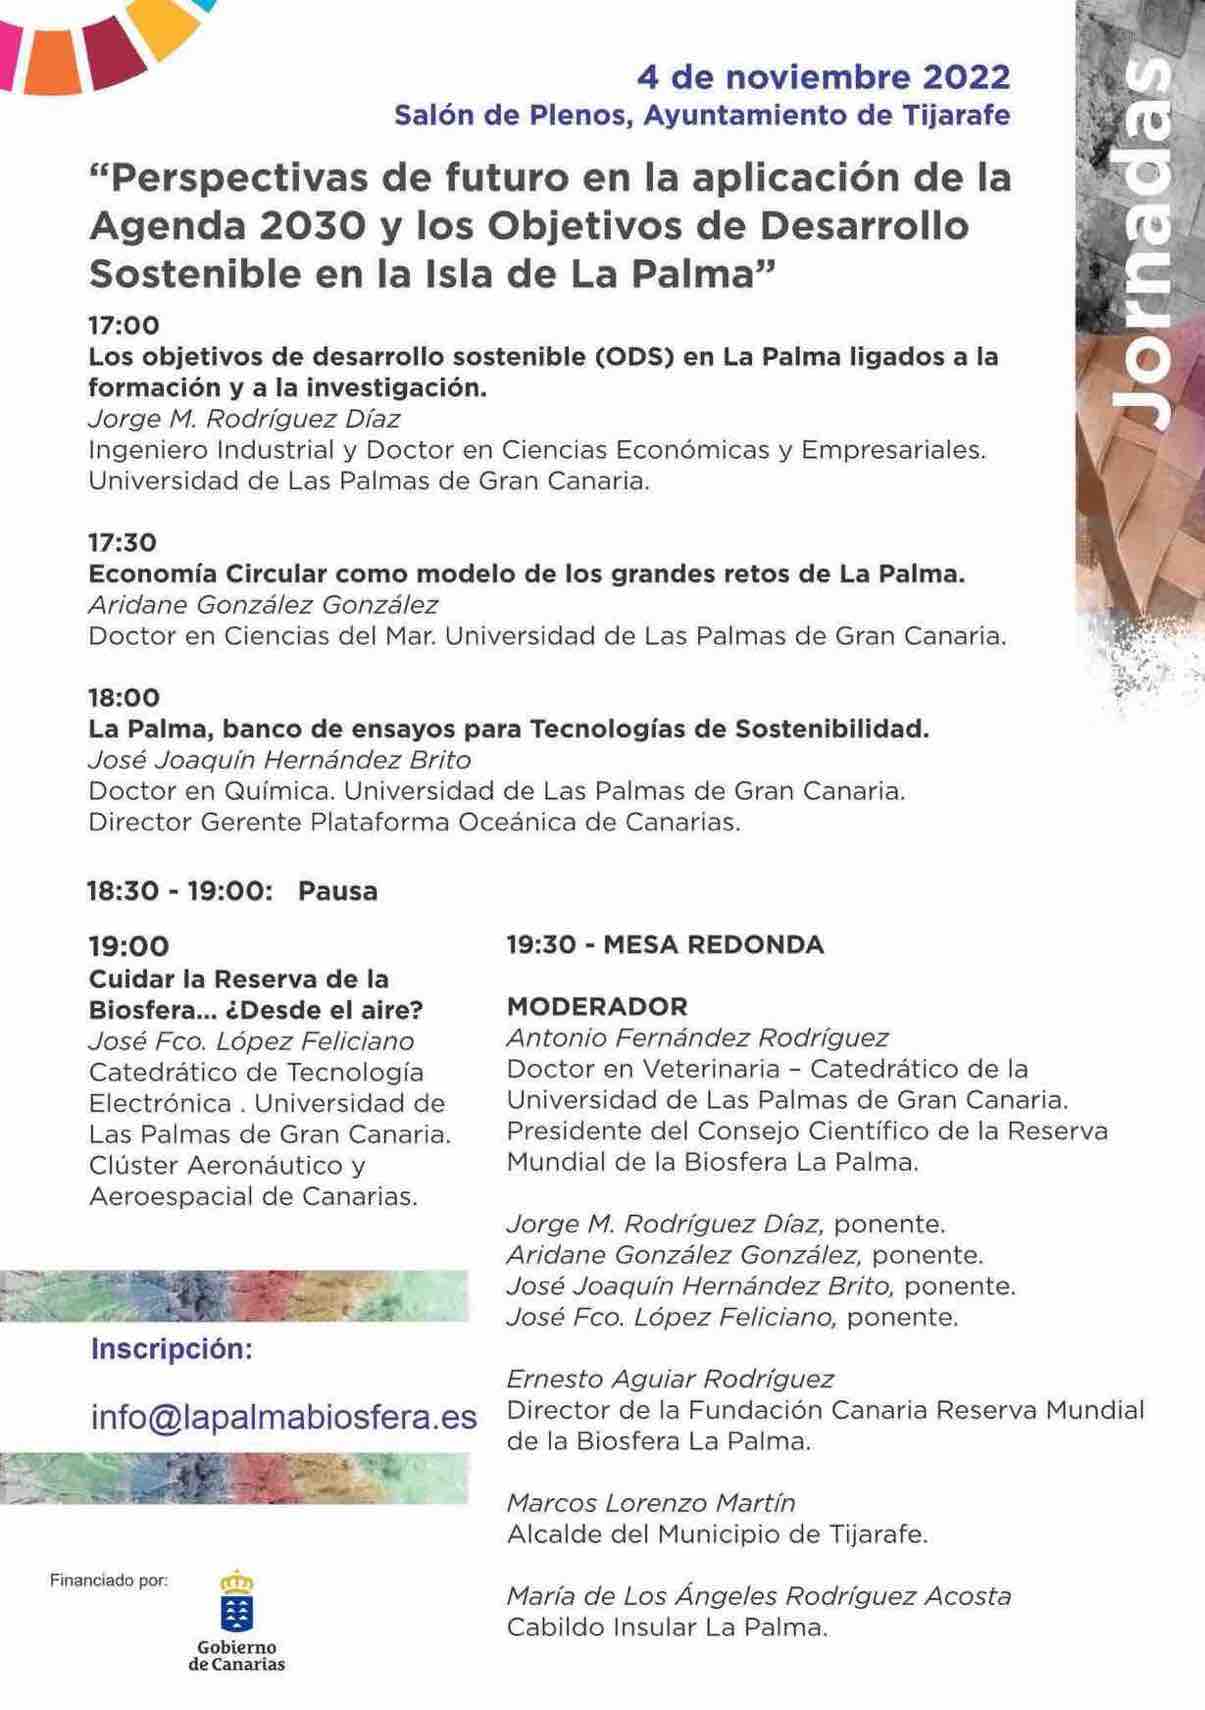 Jornadas “Perspectivas de futuro en la aplicación de la Agenda 2030 y los Objetivos de Desarrollo Sostenible en la Isla de La Palma”